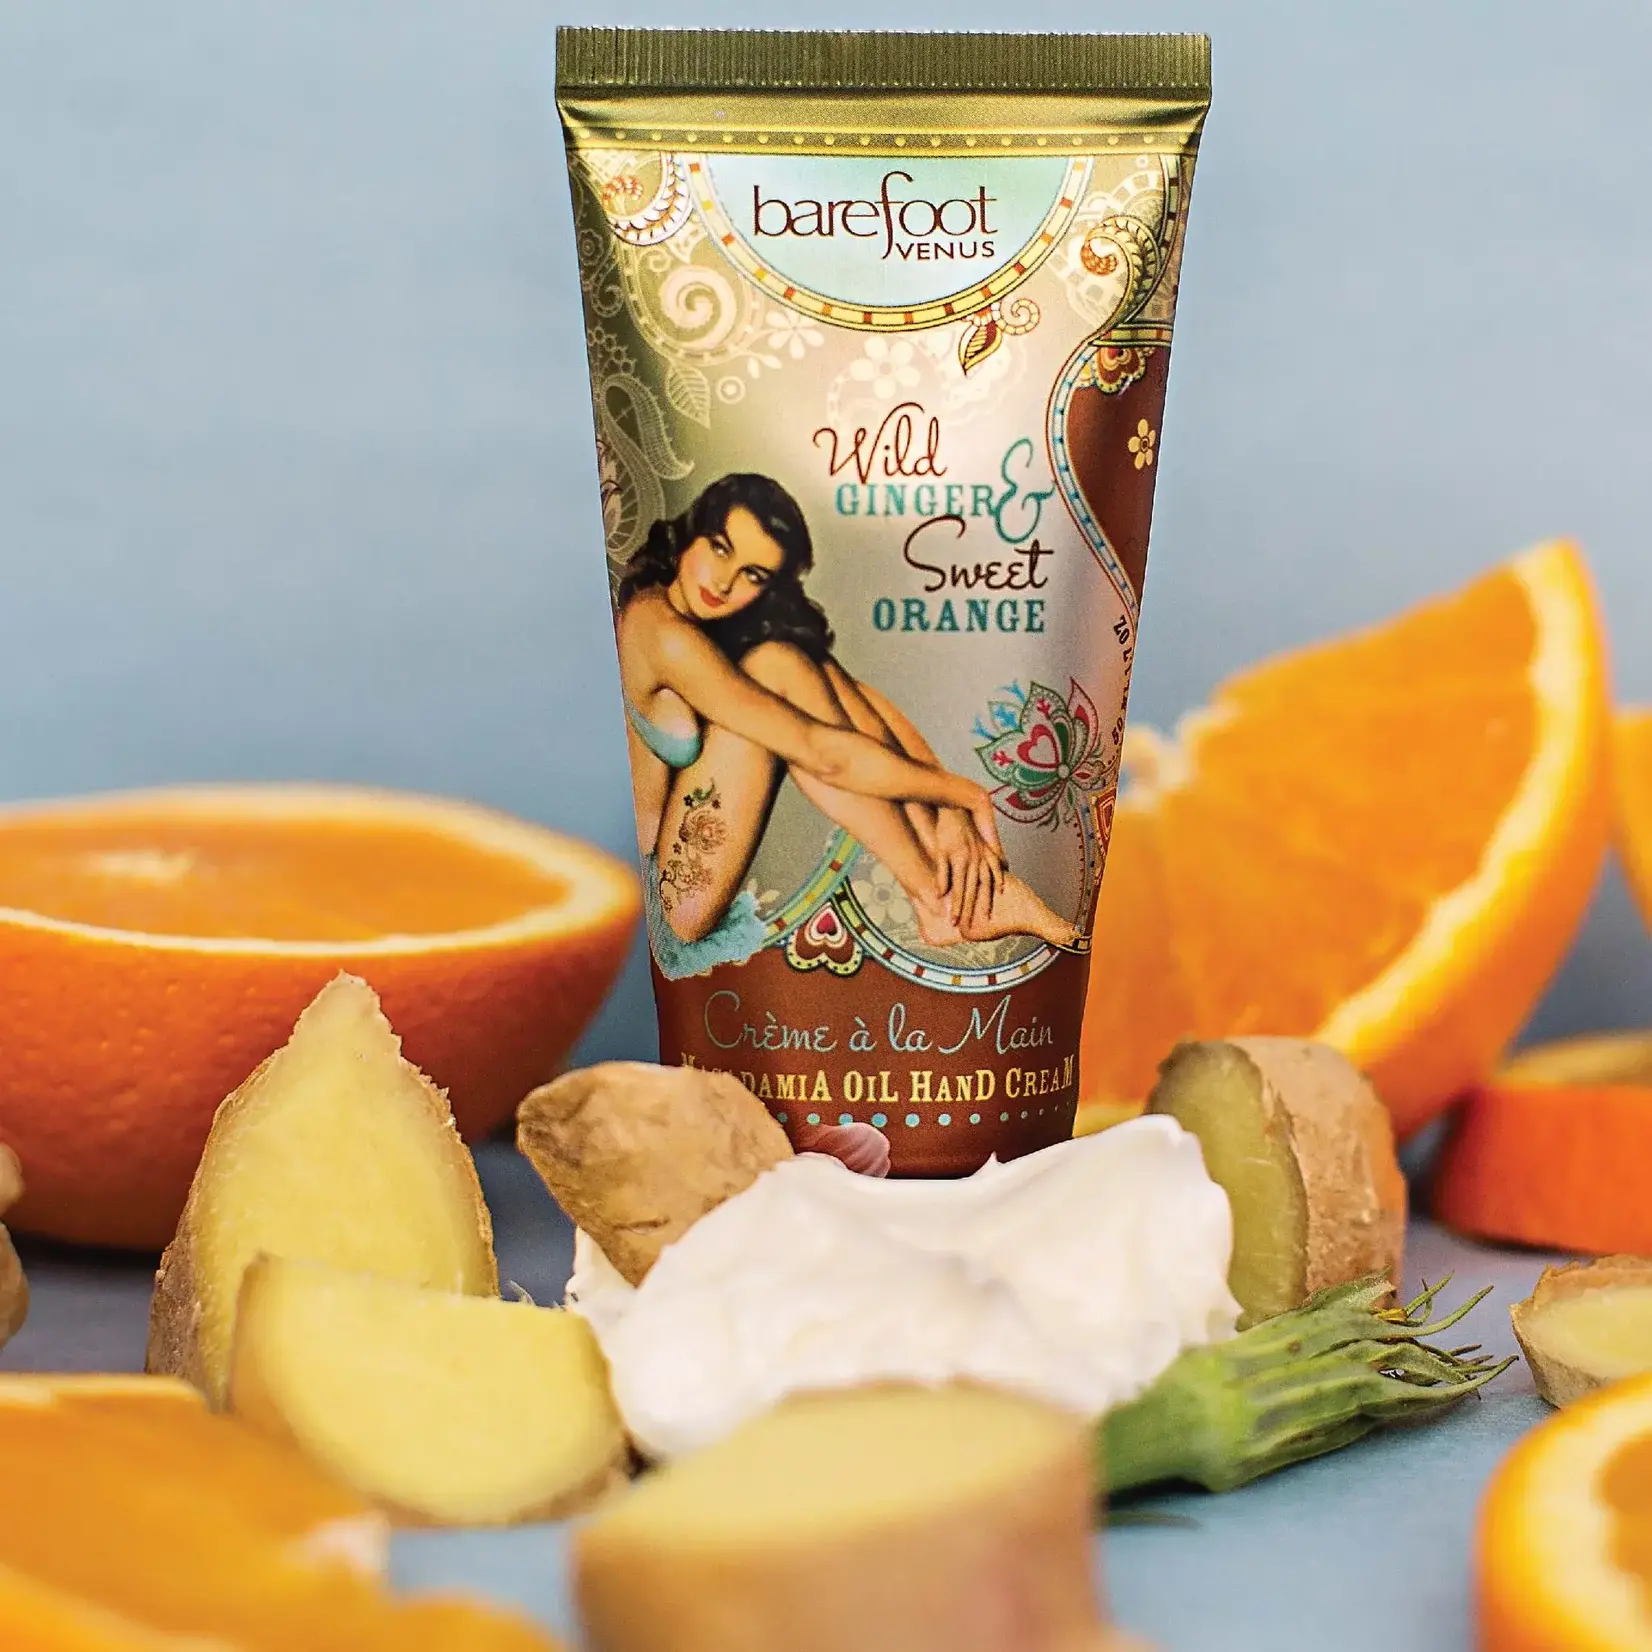 Barefoot Venus Wild Ginger & Sweet Orange Hand Cream